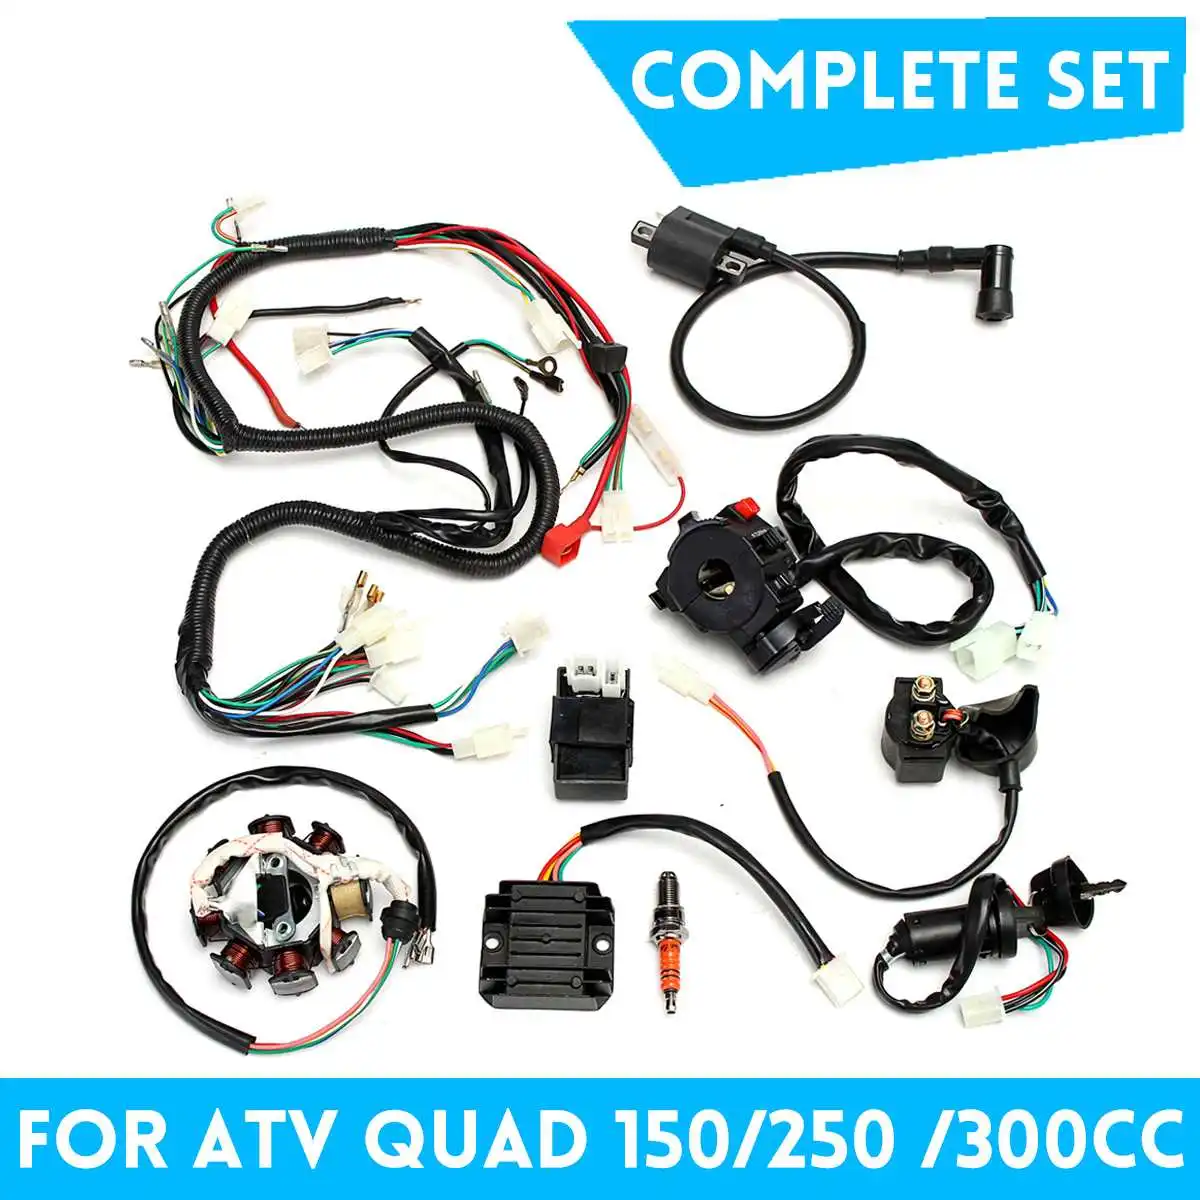 

Полный Электрический кабельный жгут выпрямитель CDI для велосипеда-грязи ATV QUAD 150cc 250cc 300cc инструмент для жгута проводов Новое поступление, 1 к...